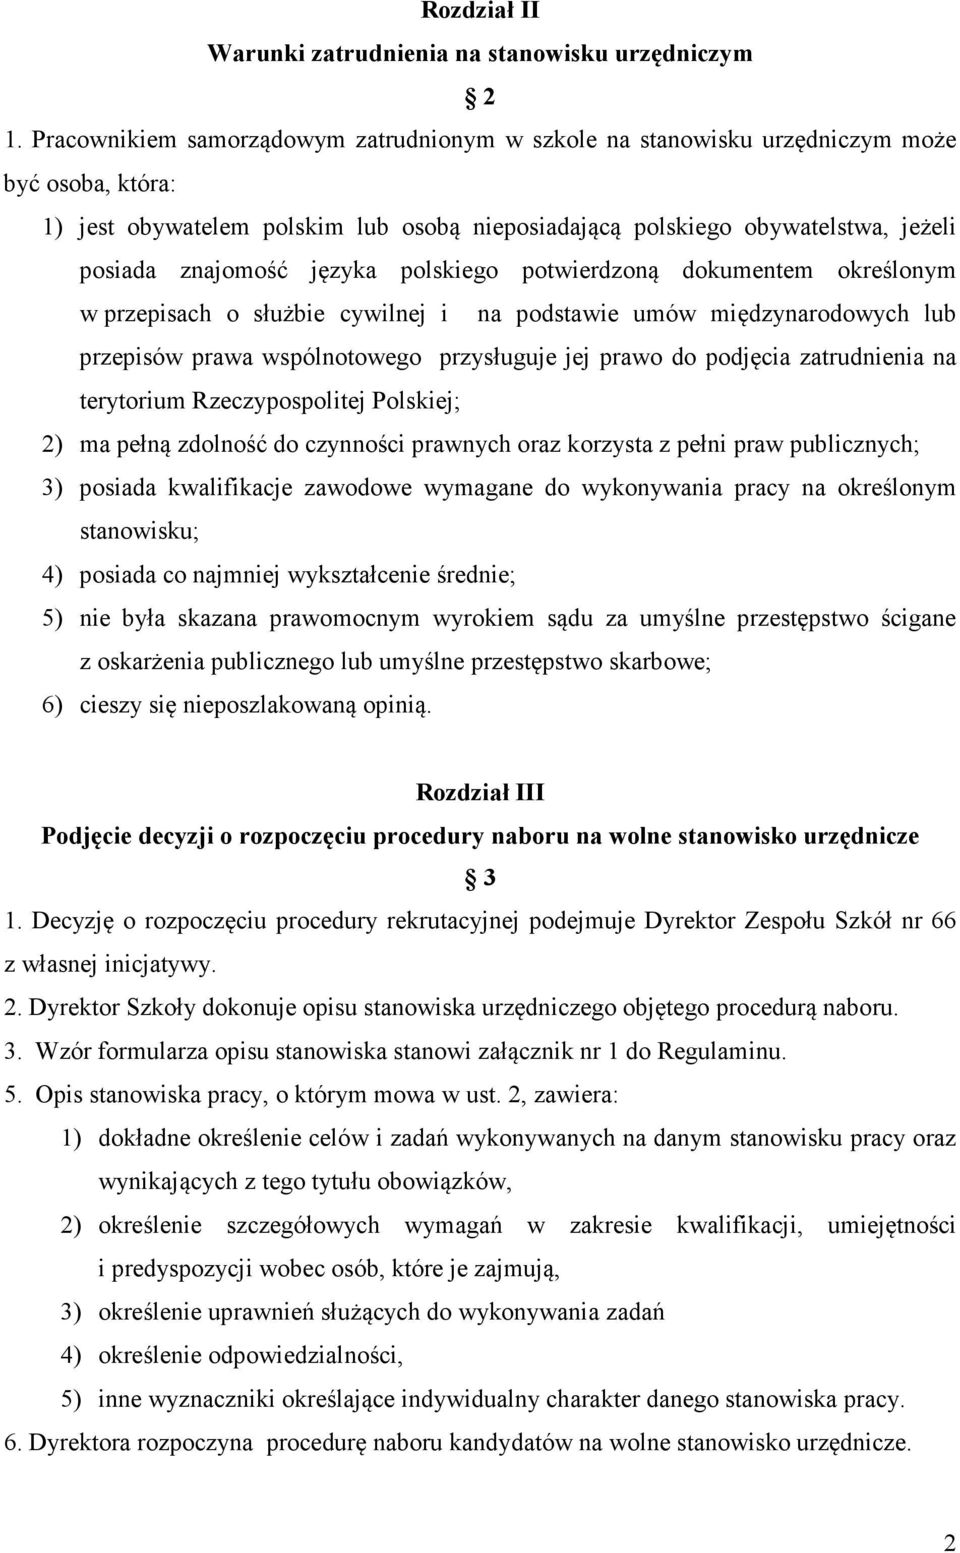 języka polskiego potwierdzoną dokumentem określonym w przepisach o służbie cywilnej i na podstawie umów międzynarodowych lub przepisów prawa wspólnotowego przysługuje jej prawo do podjęcia